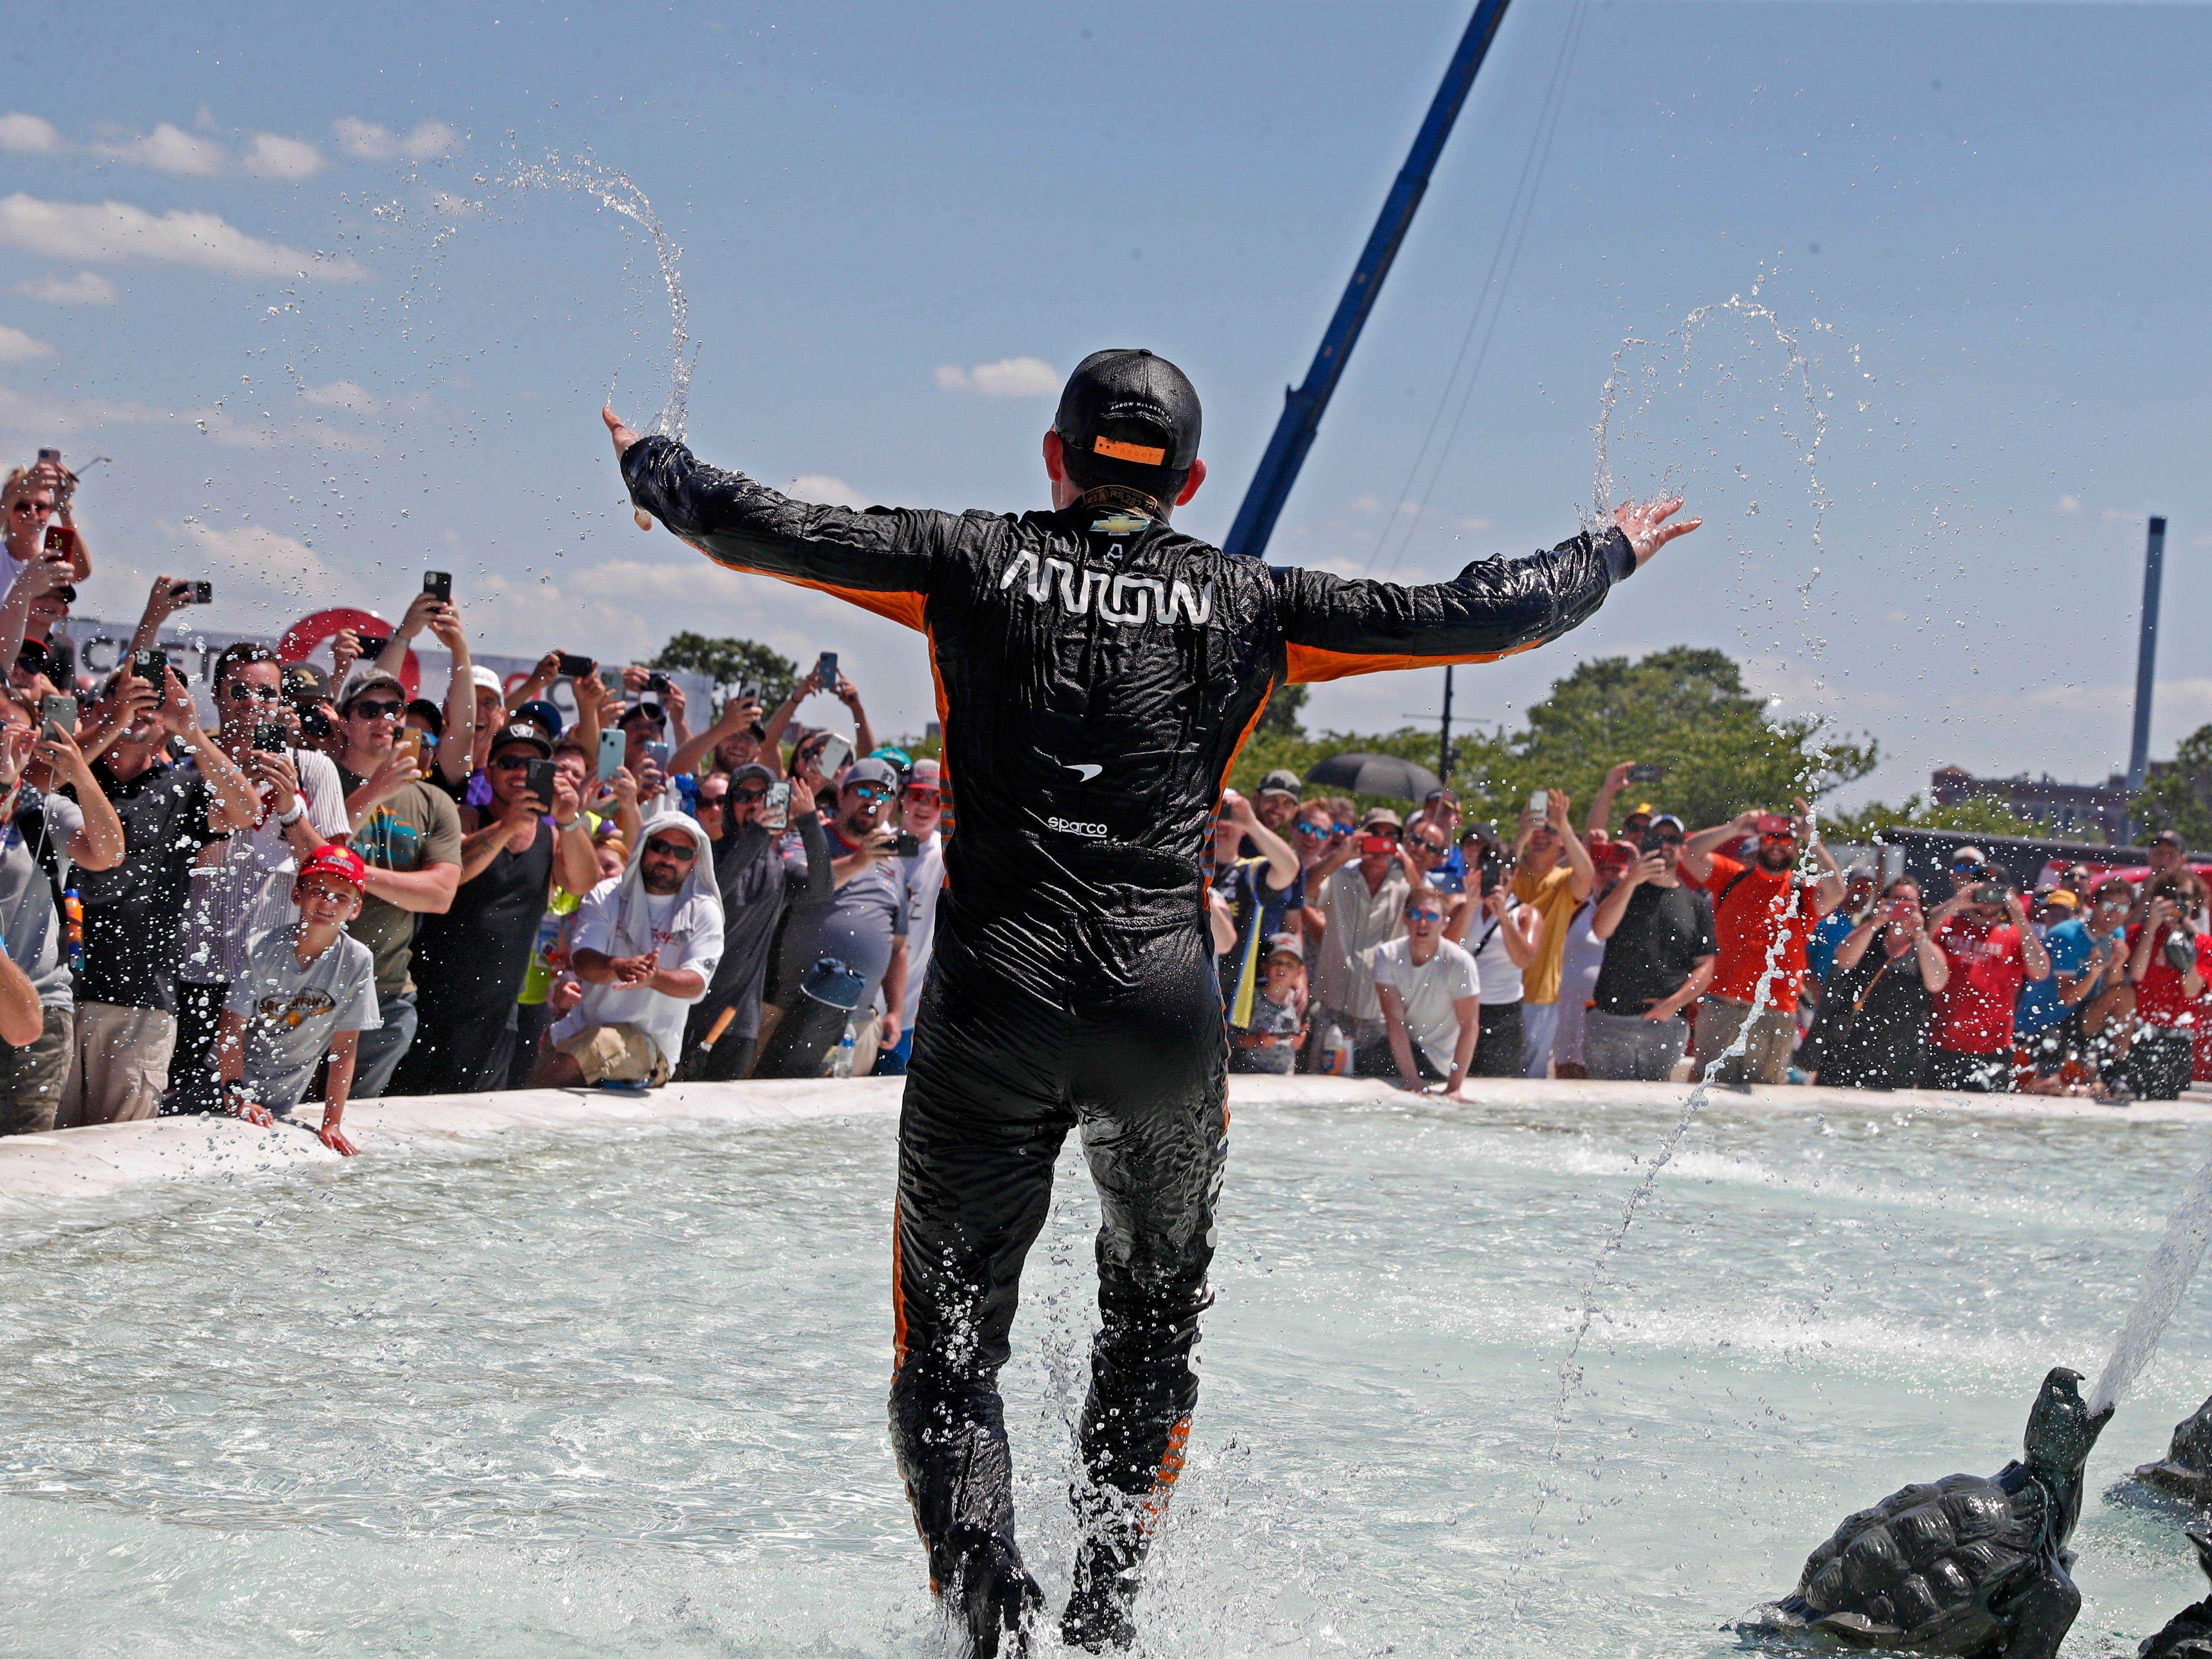 Der Fahrer der Indy-Car-Serie, Pato O'Ward, fährt nach dem Gewinn des Chevrolet Detroit Grand Prix Race 2 im James Scott Memorial-Brunnen